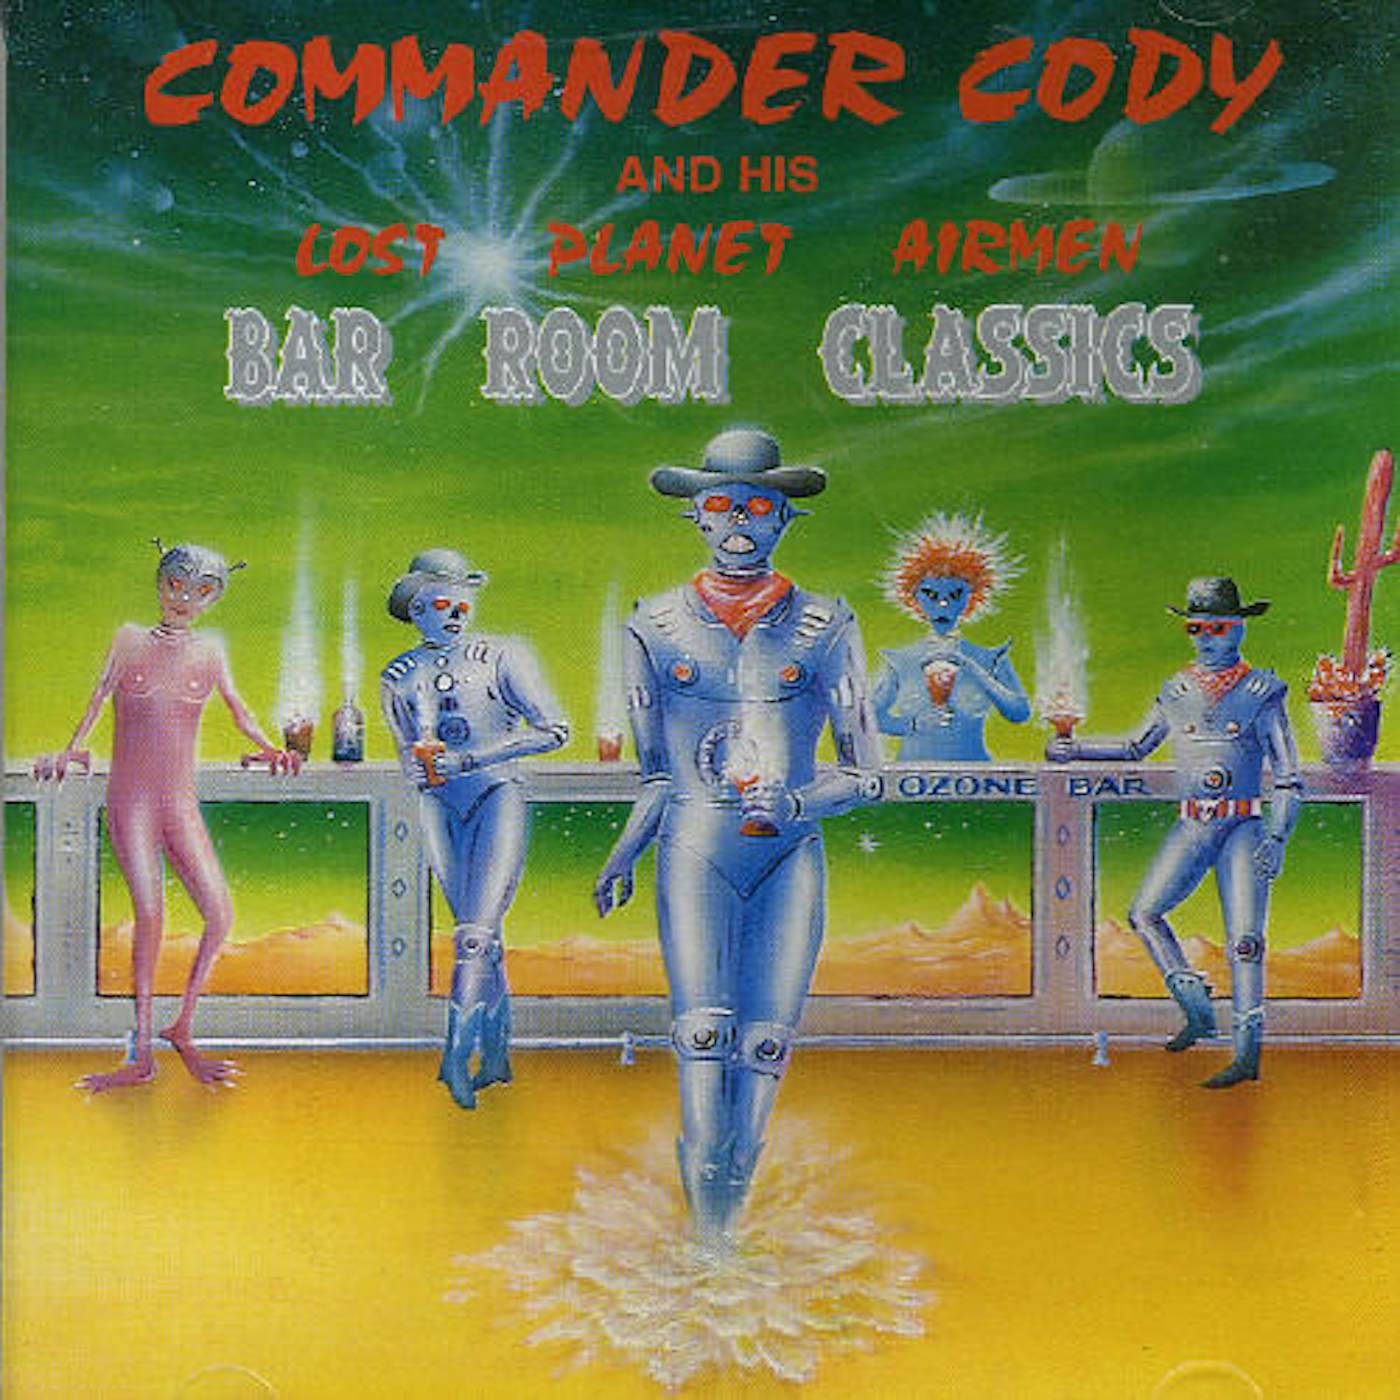 Commander Cody BAR ROOM CLASSSICS CD